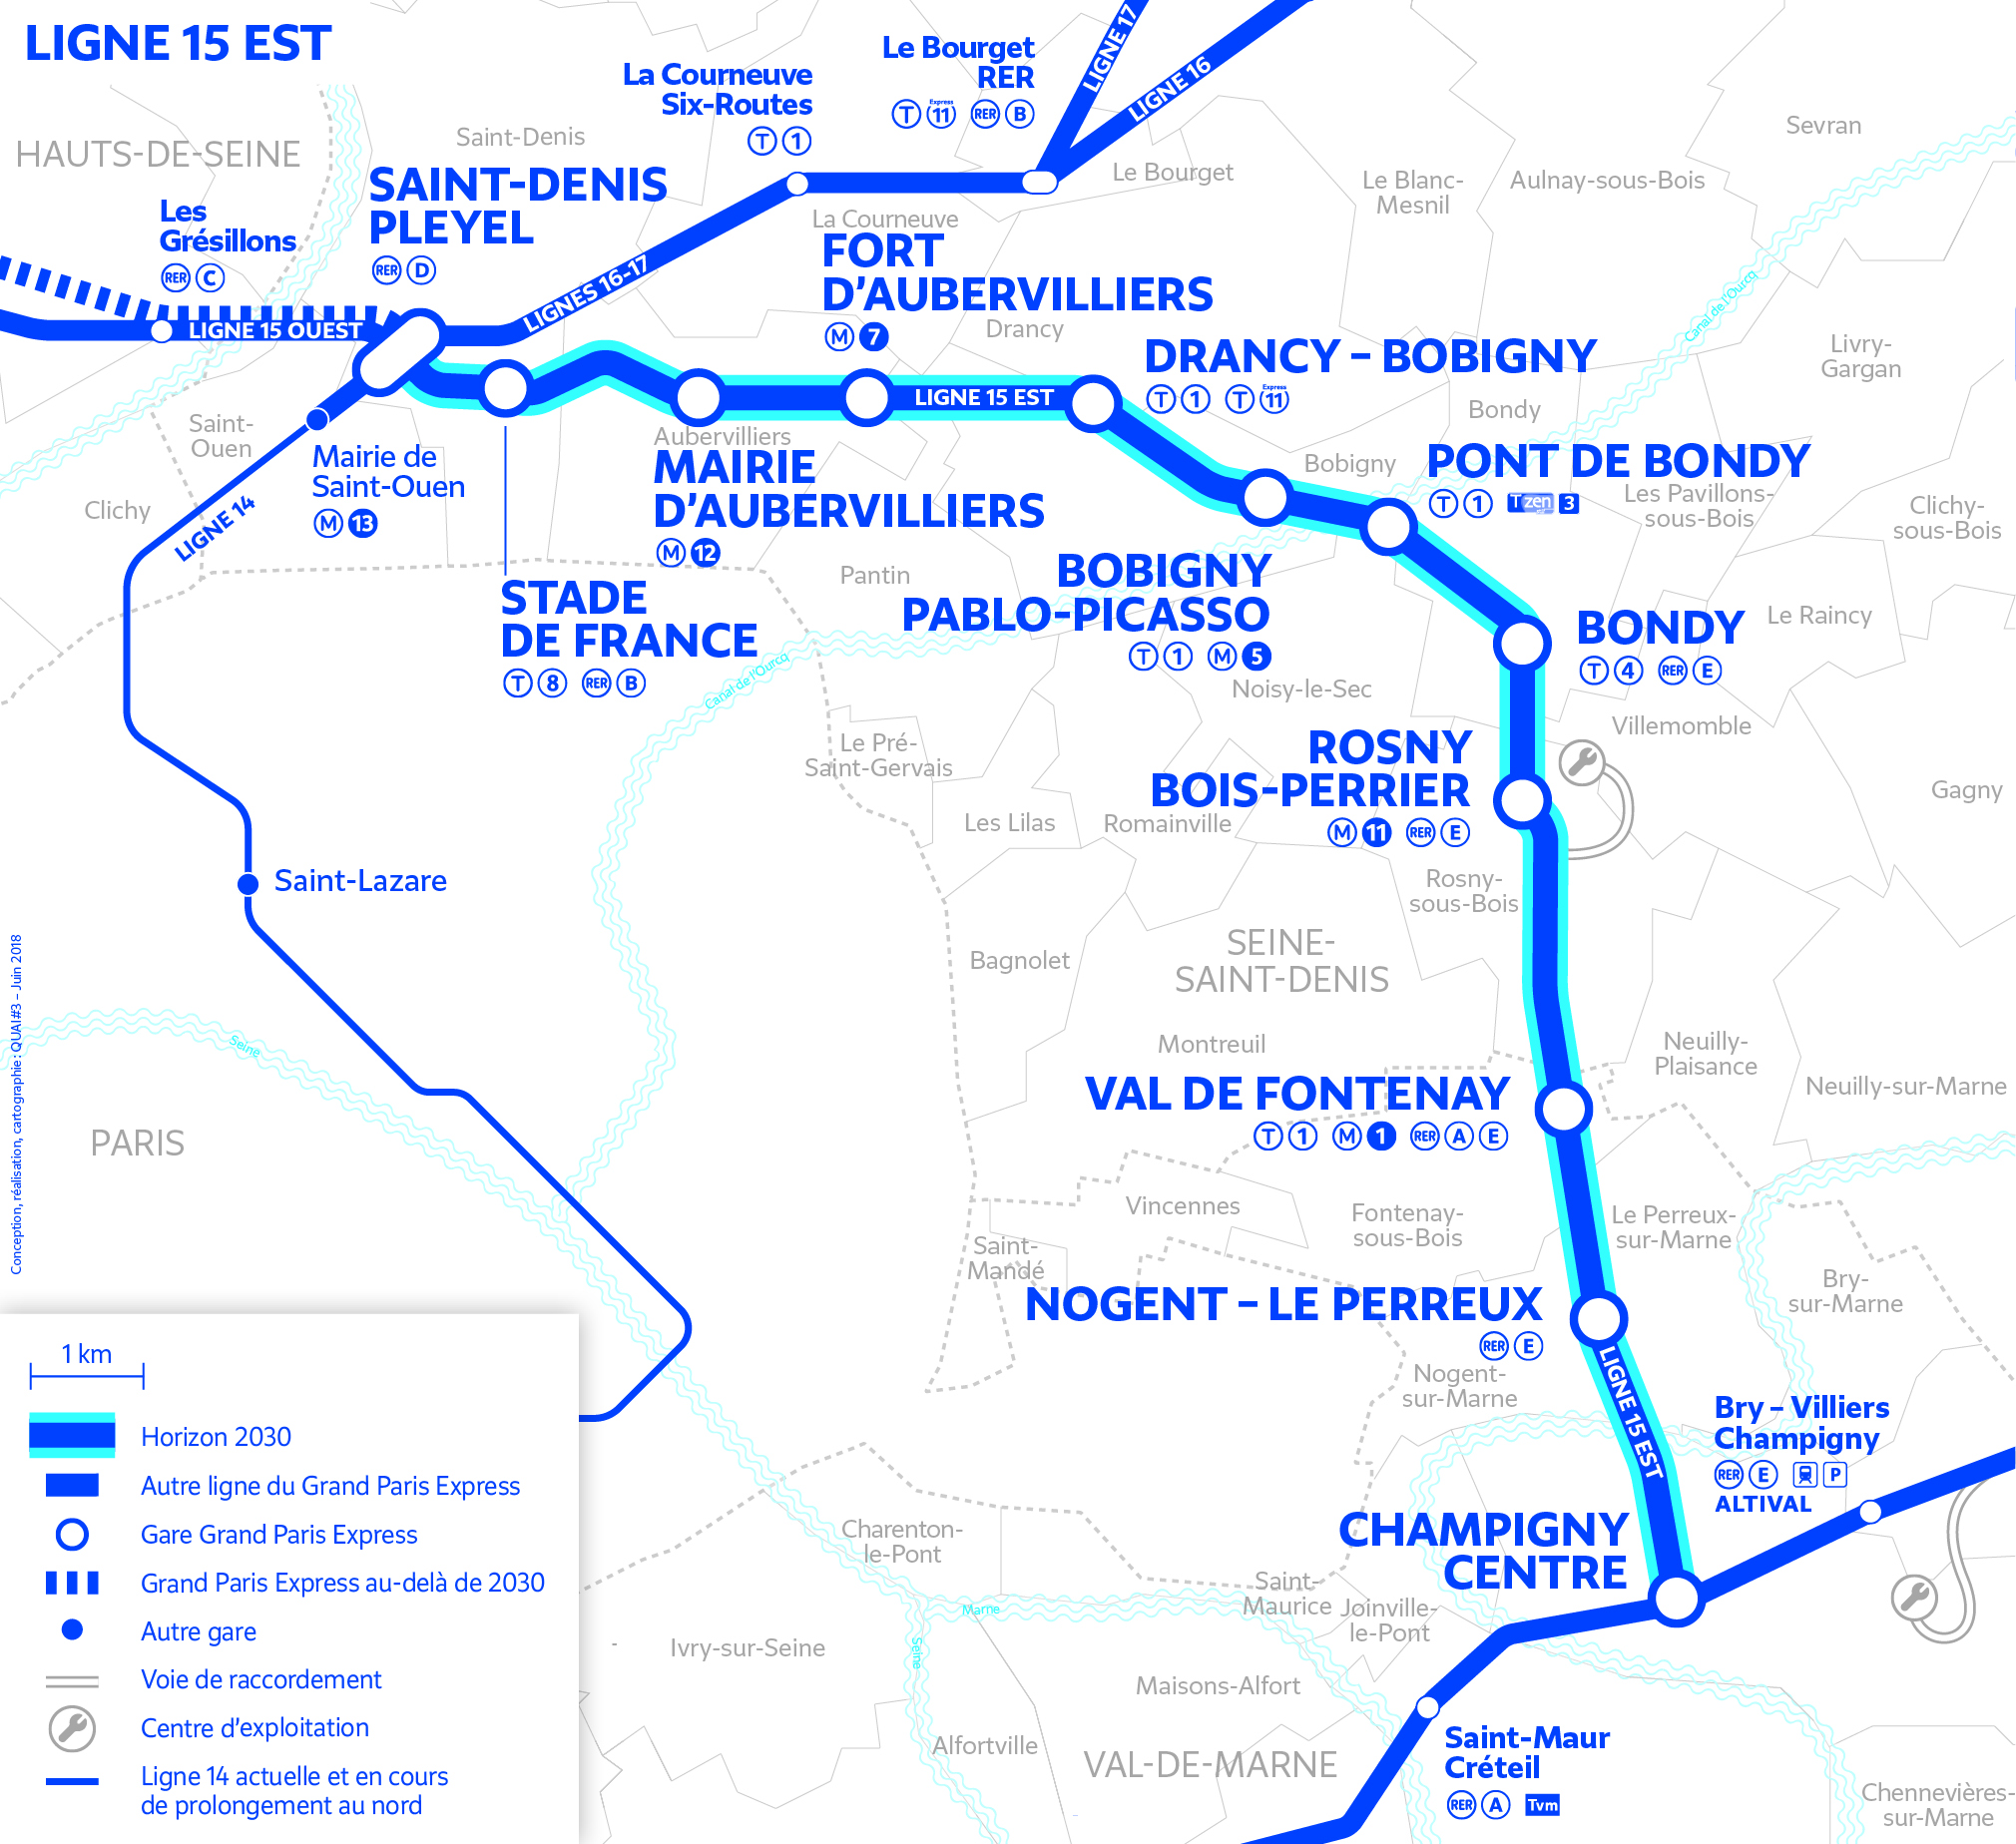 Line 15 East – Grand Paris Express